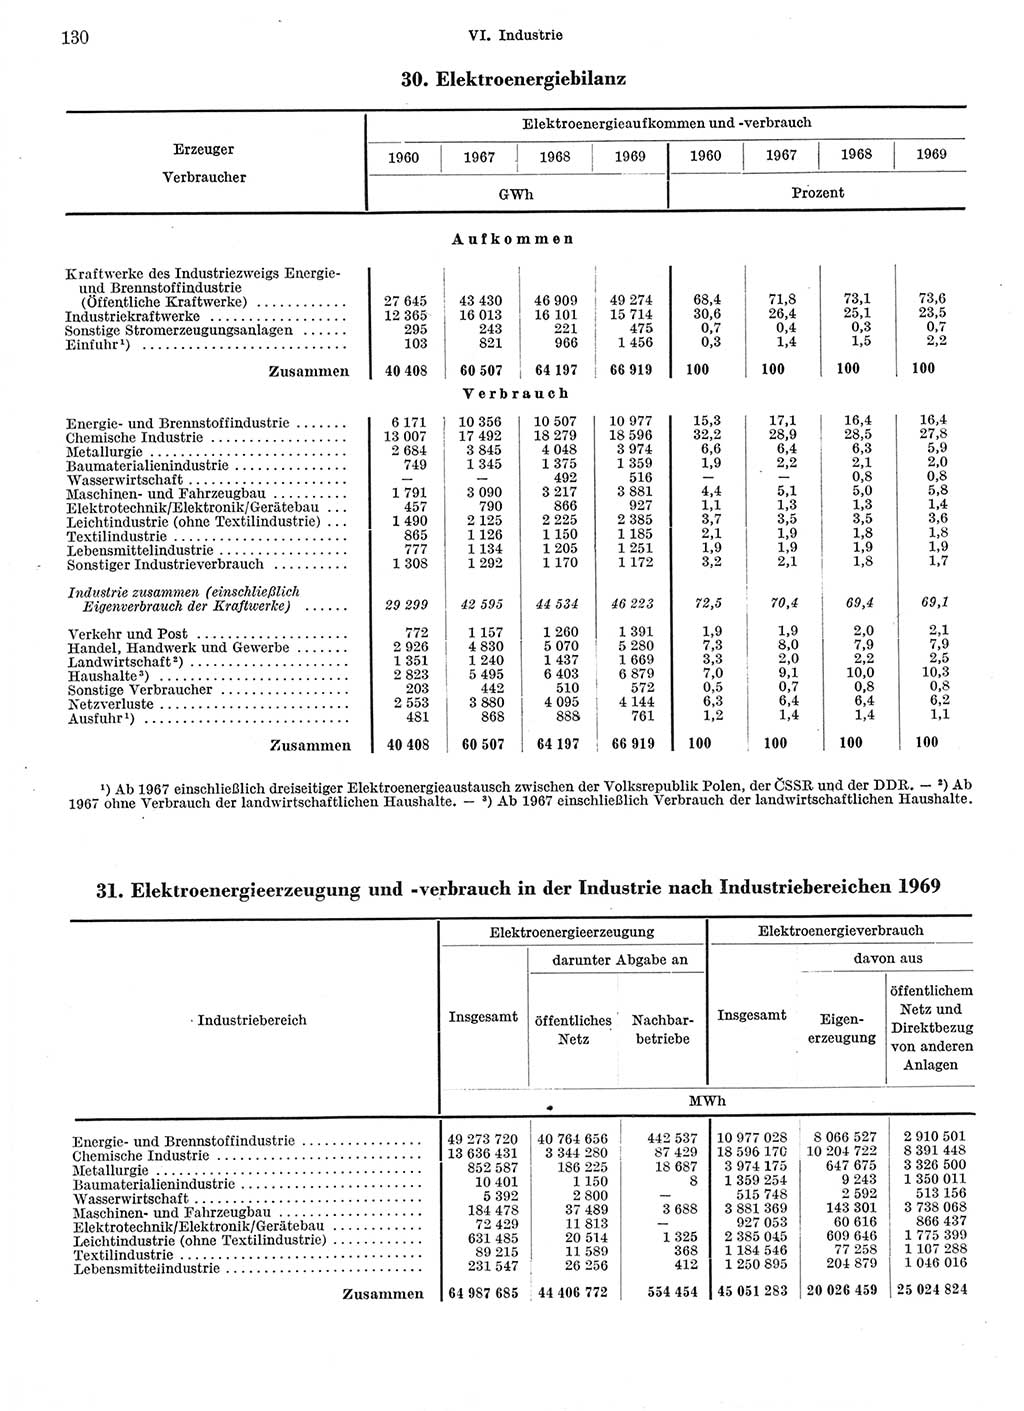 Statistisches Jahrbuch der Deutschen Demokratischen Republik (DDR) 1970, Seite 130 (Stat. Jb. DDR 1970, S. 130)